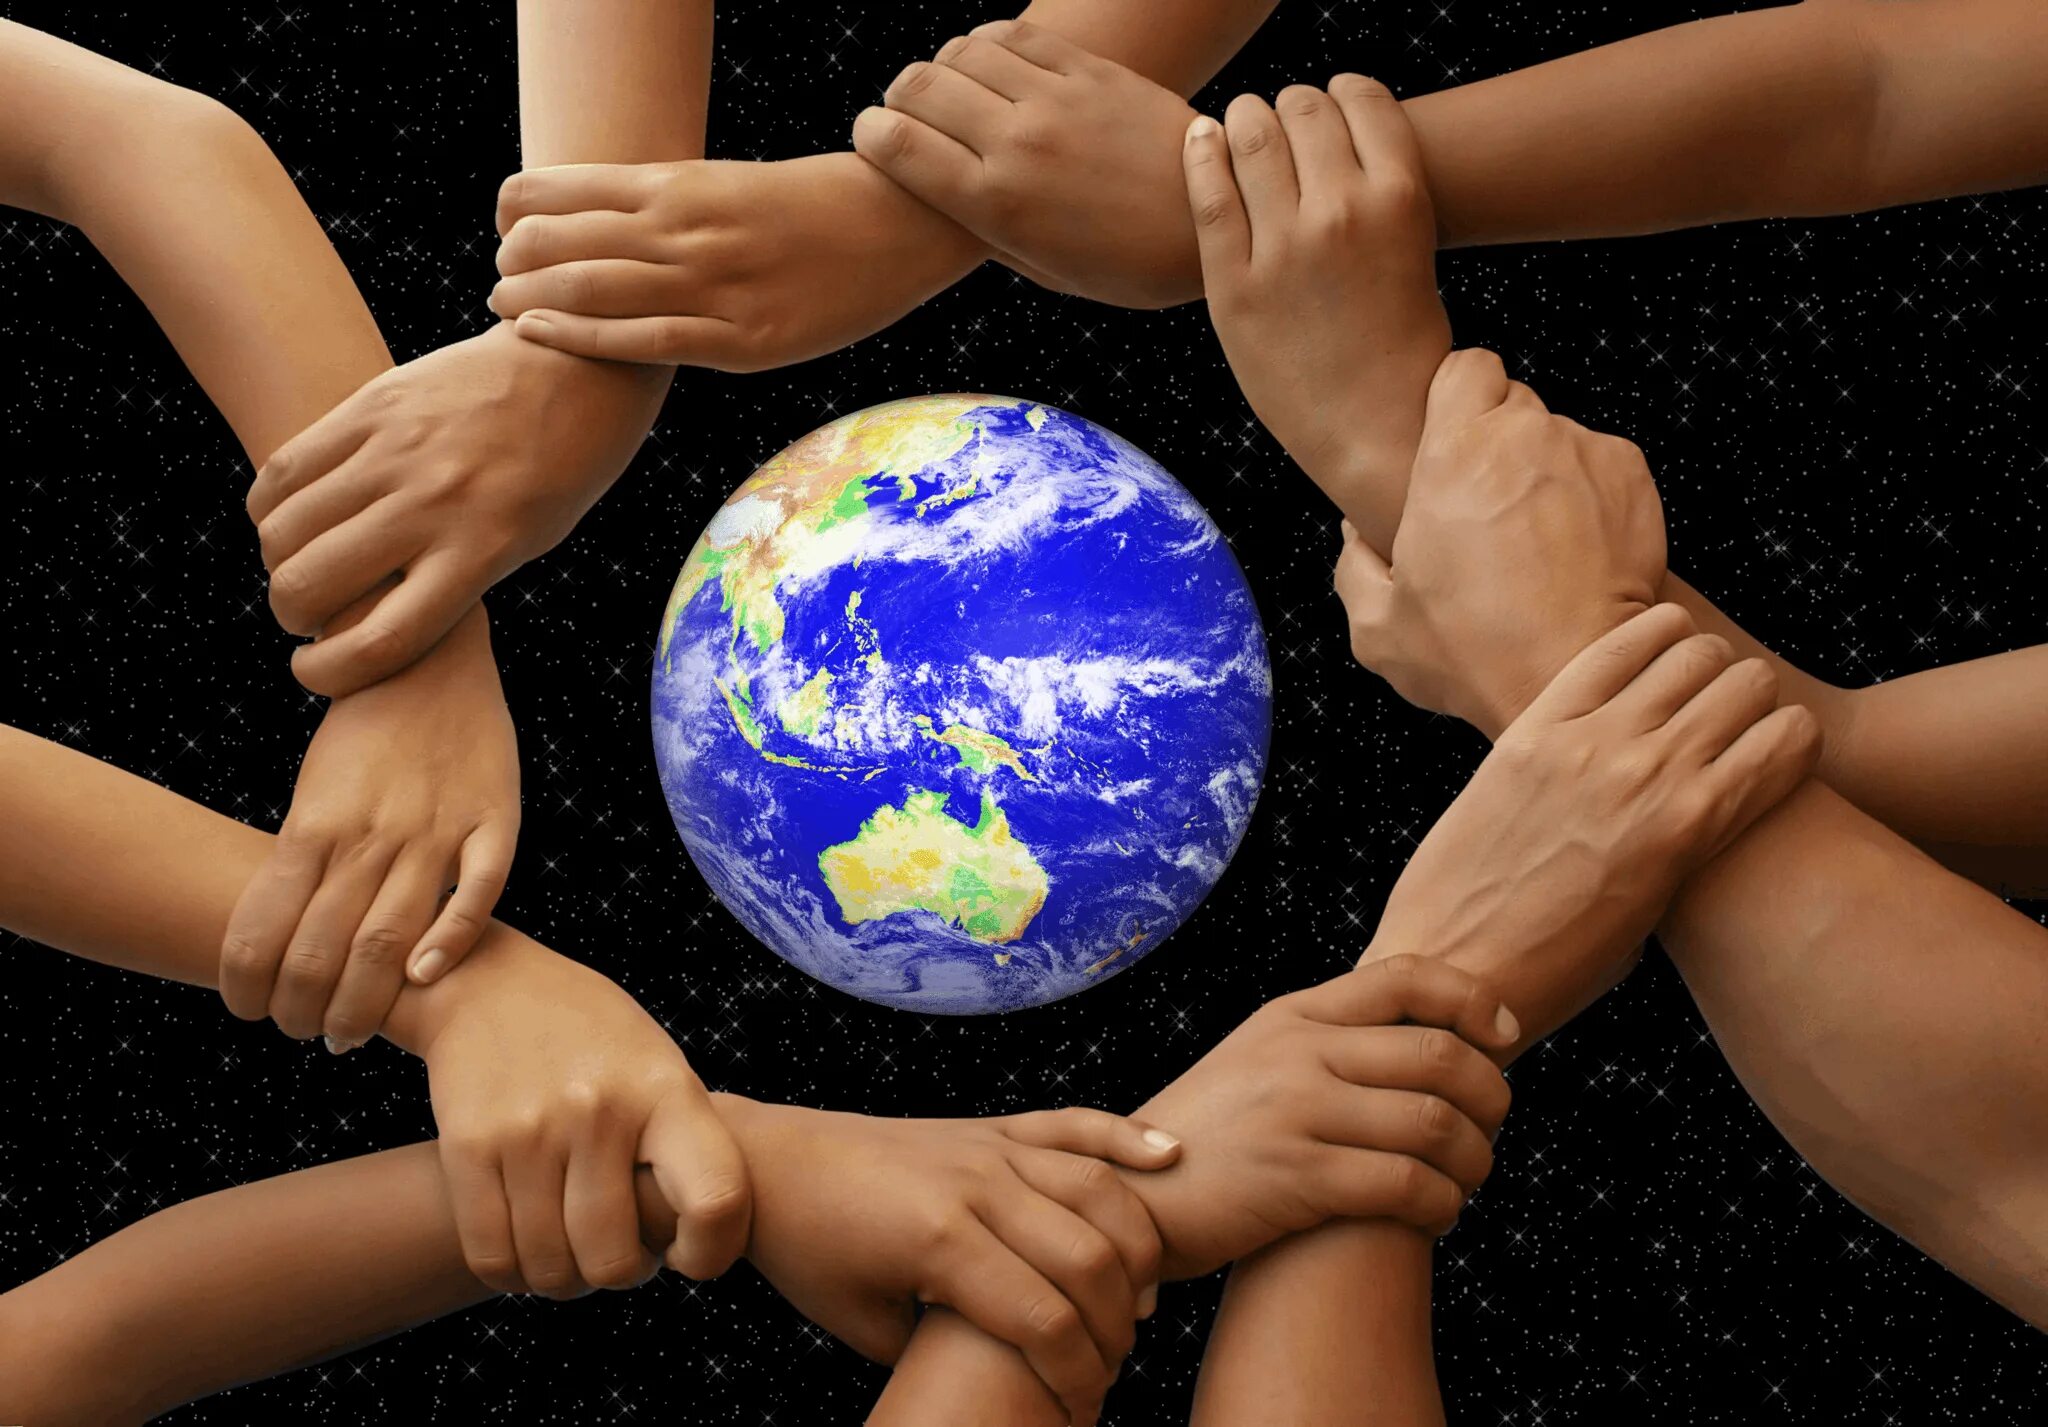 "И на земли мир…". Мир на планете. Дружат люди всей земли. Планета людей.